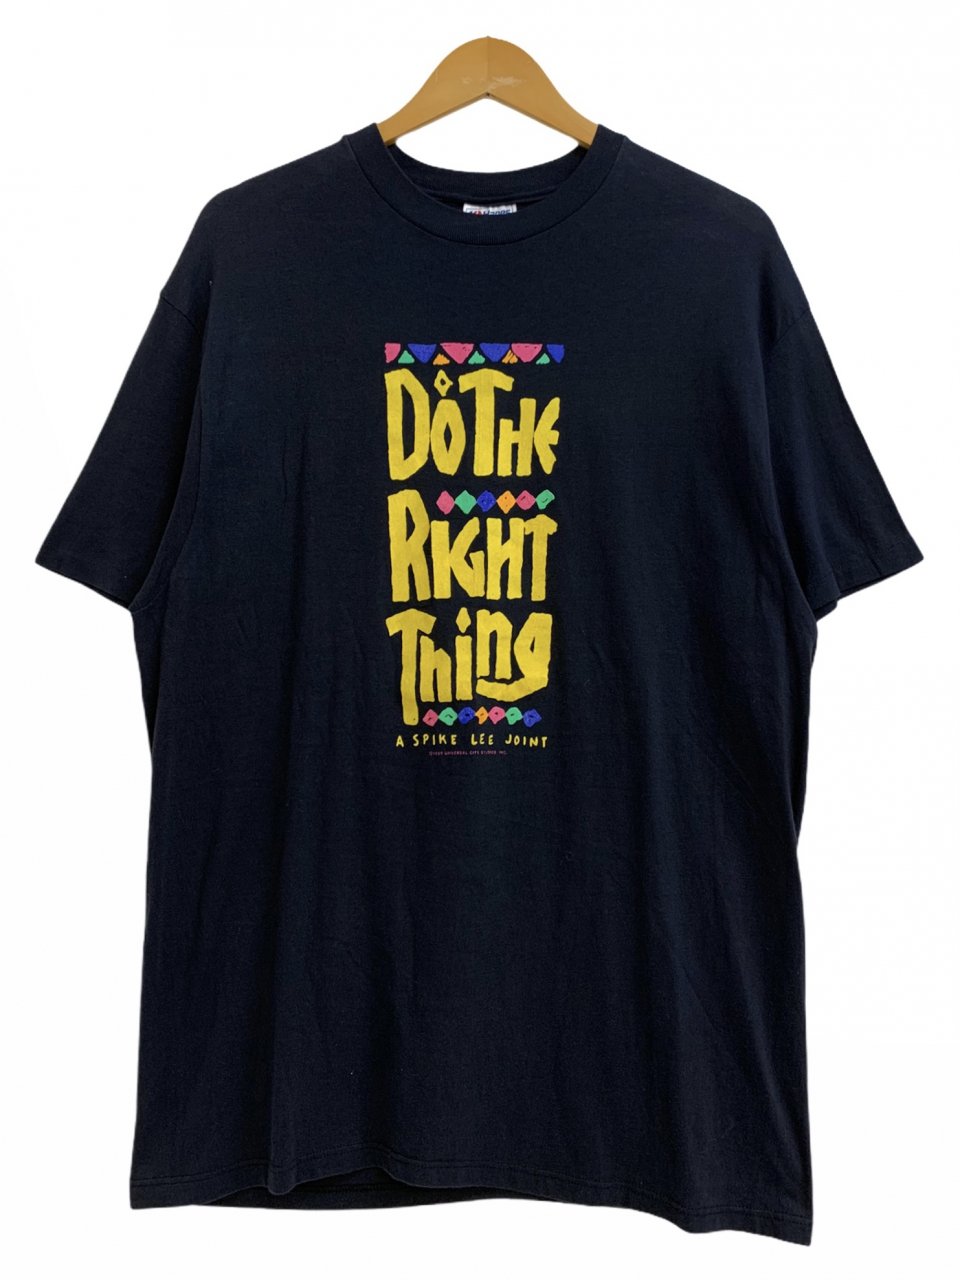 USA製 89年 DO THE RIGHT THING S/S Tee 黒 XL ドゥザライトシング 半袖 Tシャツ 映画T ムービーT SPIKE  LEE スパイクリー 40ACRES 古着 - NEWJOKE ONLINE STORE